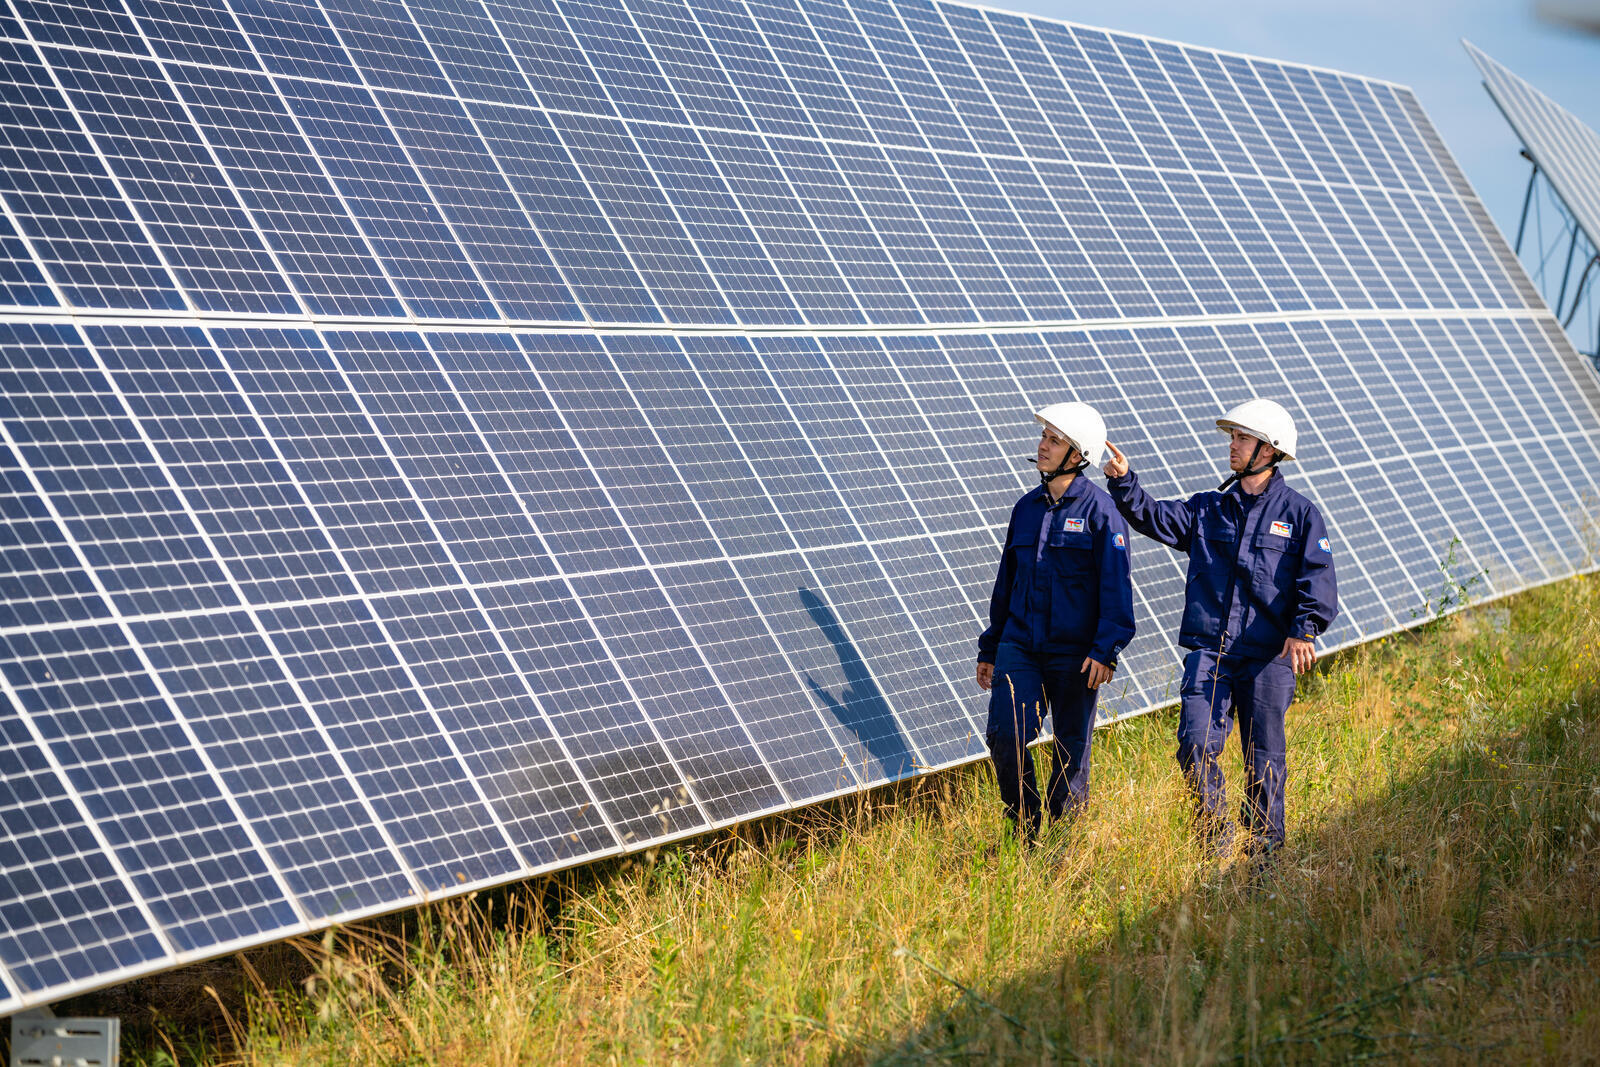 Employees at a solar farm